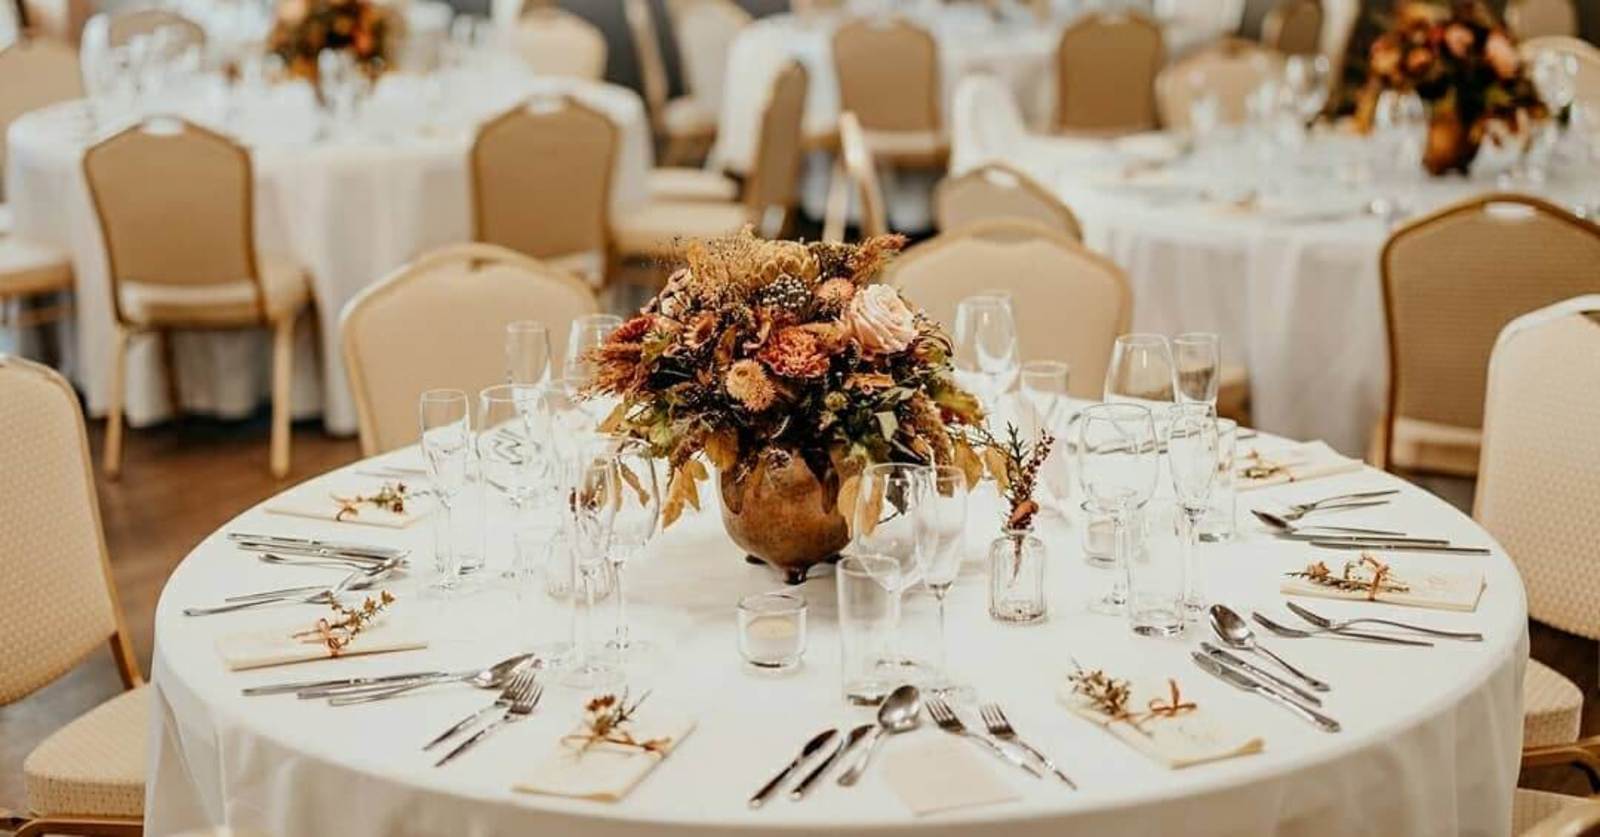 jednoducha vyzdoba svadobneho stola z kvetov